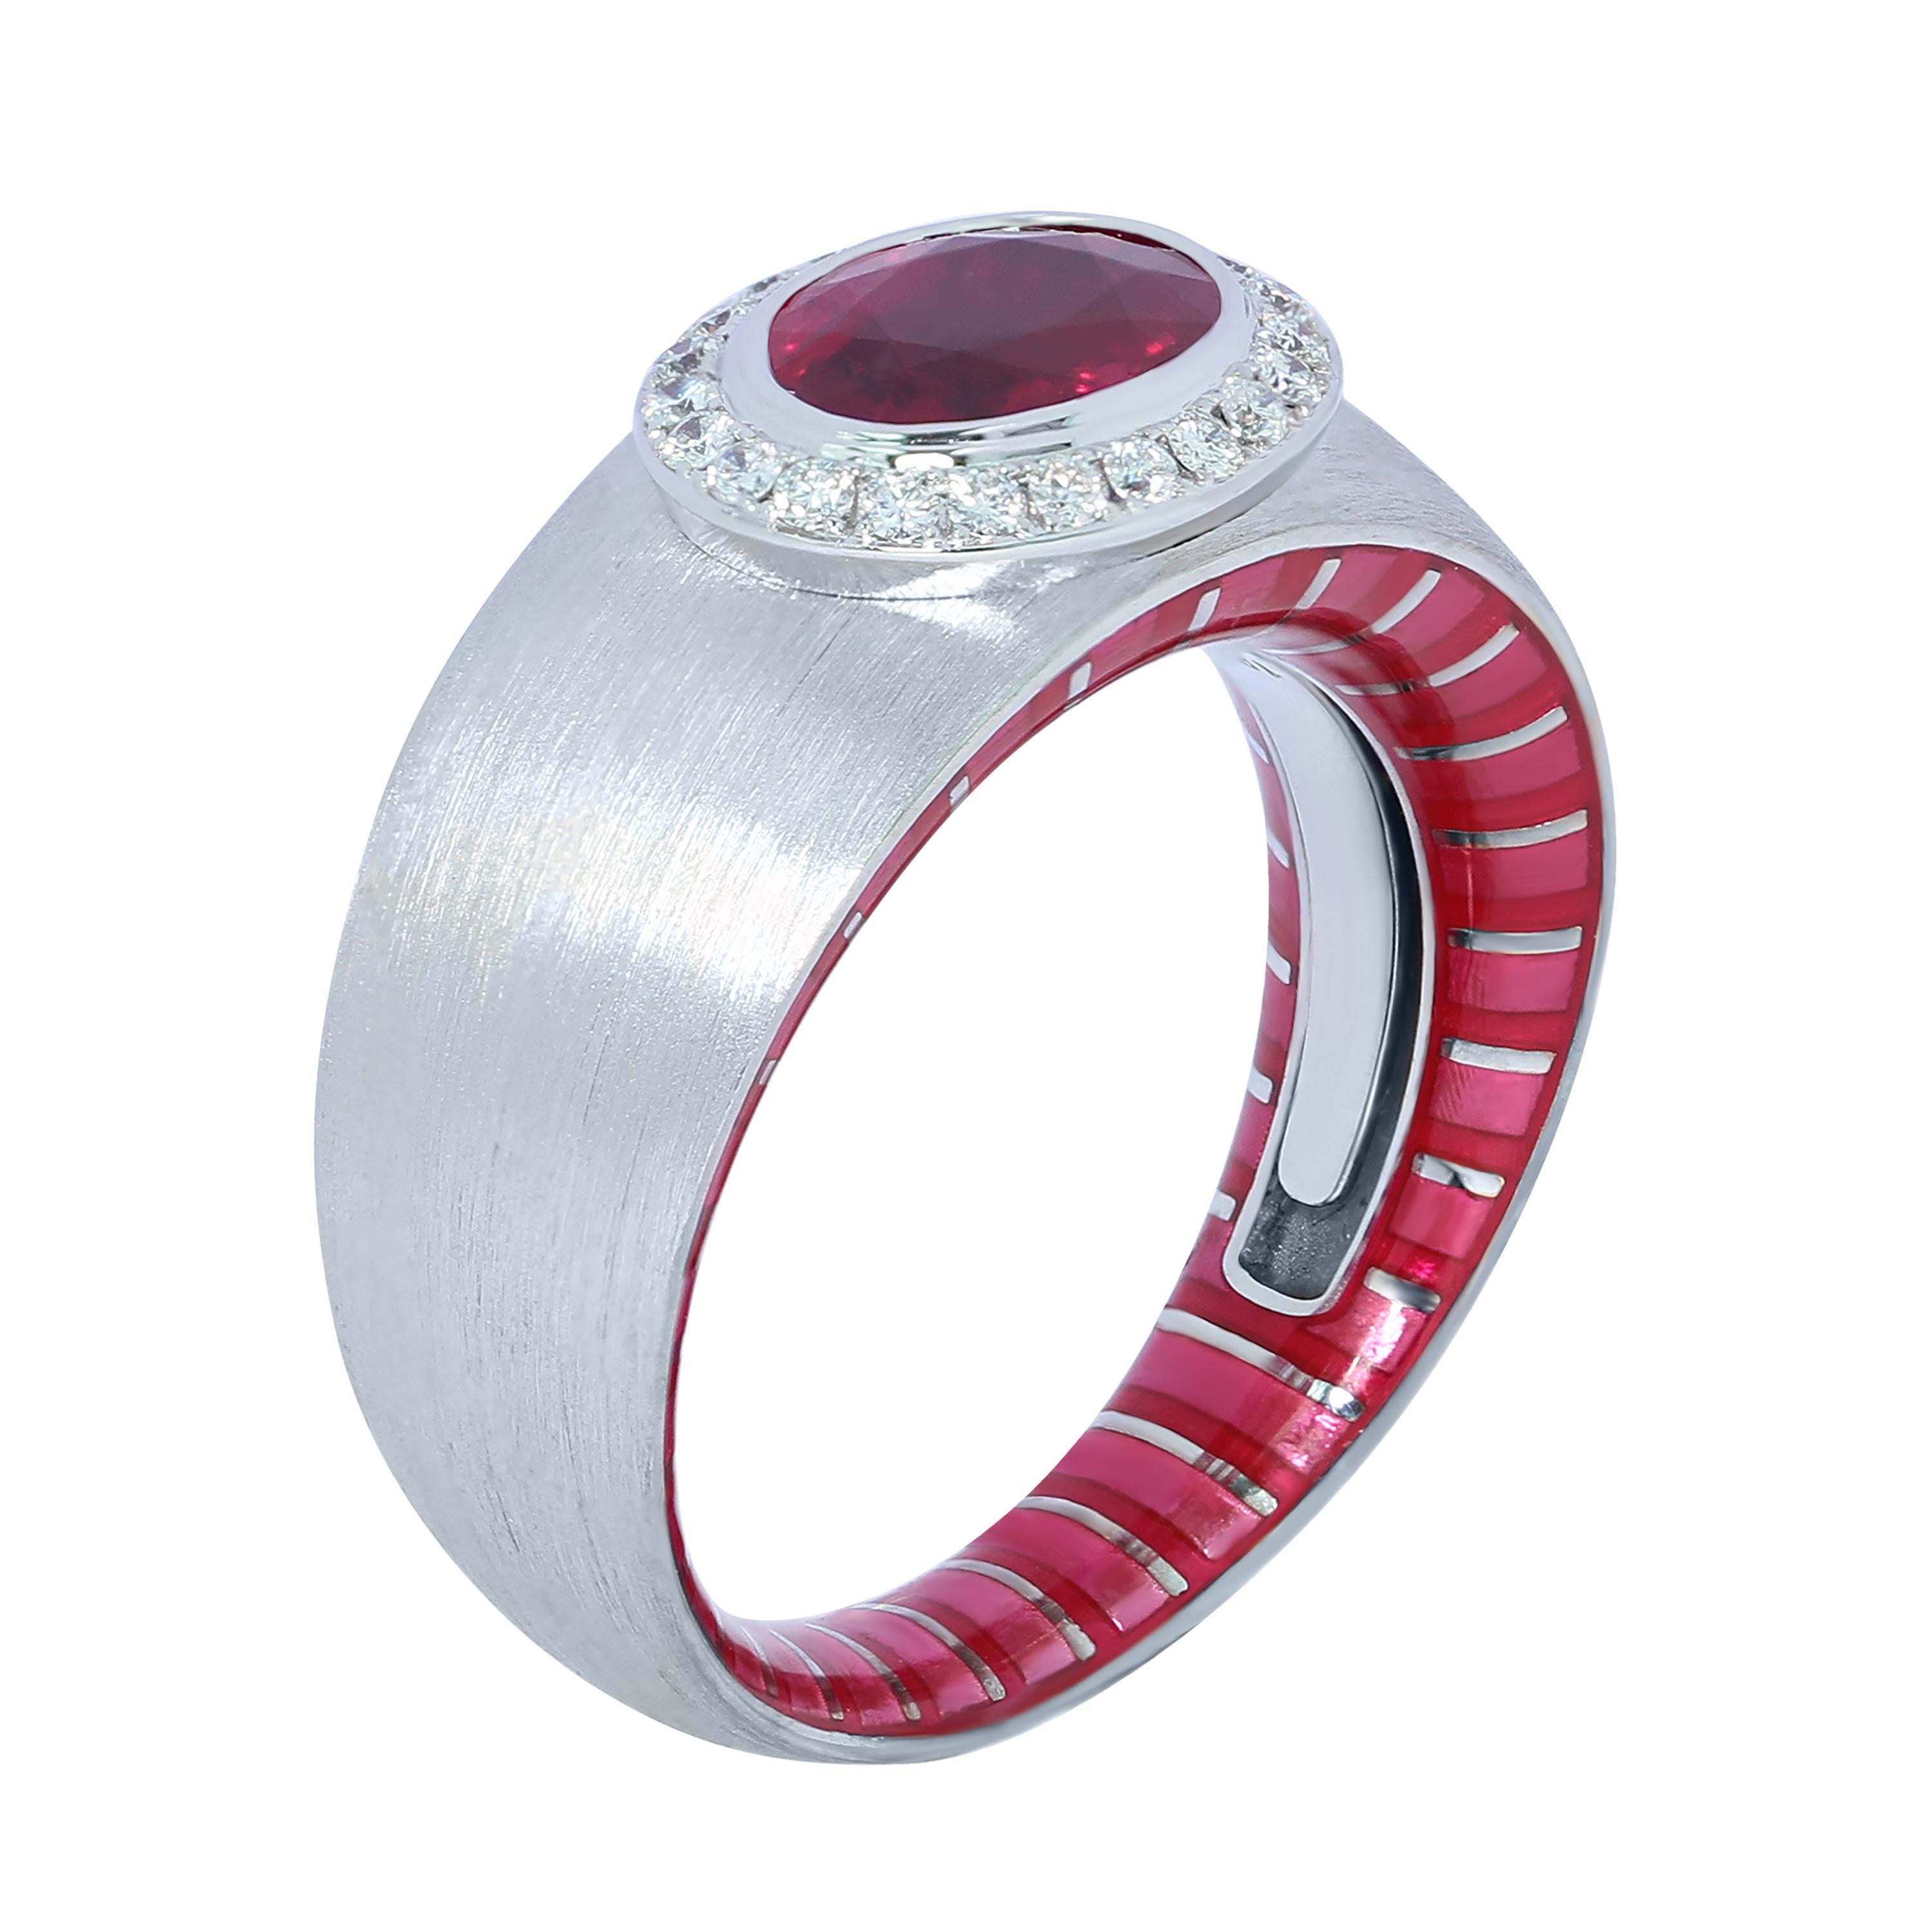 AIGL zertifizierter 2,01 Karat Rubin-Diamant-Emaille 18 Karat Weißgold Ring
Entdecken Sie die unendlichen Kombinationsmöglichkeiten der Kaleidoscope Collection. Mixen und kombinieren ist angesagt! Sehen Sie sich diesen spektakulären Ring einmal